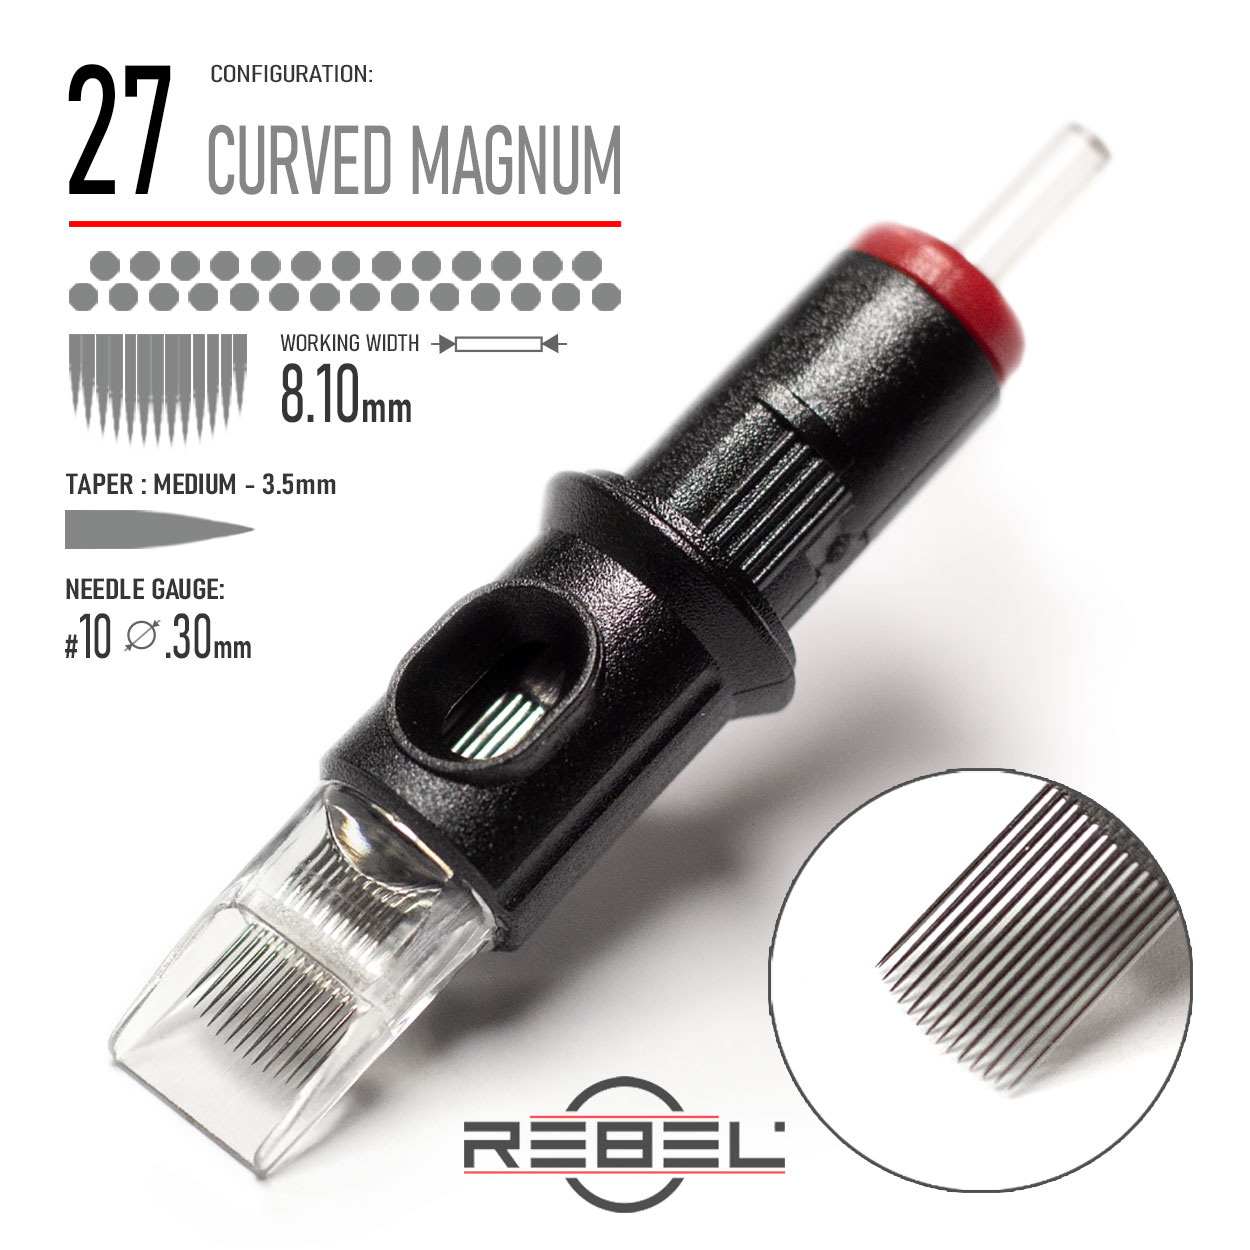 REBEL- Precision Cartridge-CURVED MAGNUM 27